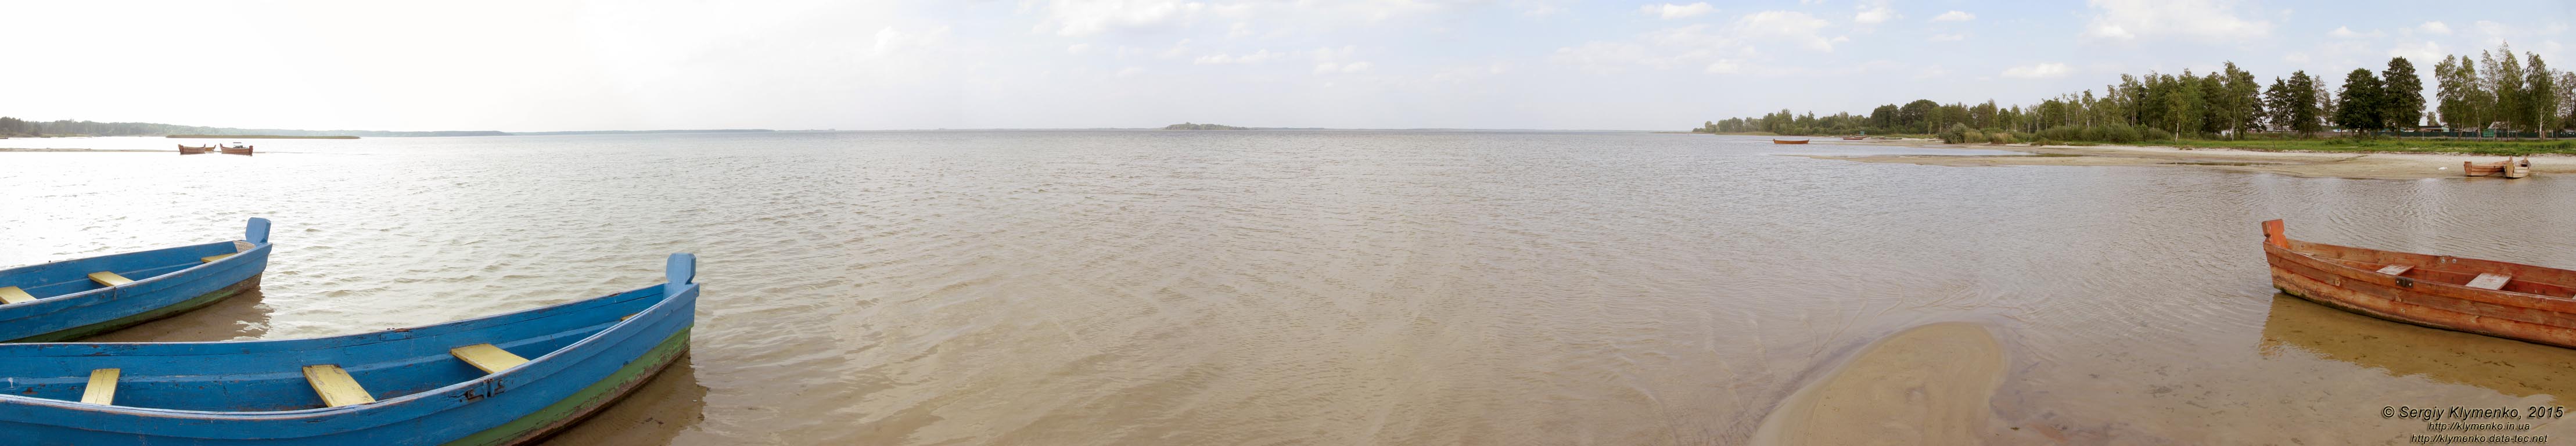 Волынь, Шацкие озёра. Фото. Живописный вид озера Свитязь. Панорама ~210° (51°28'41.30"N, 23°50'31.60"E).